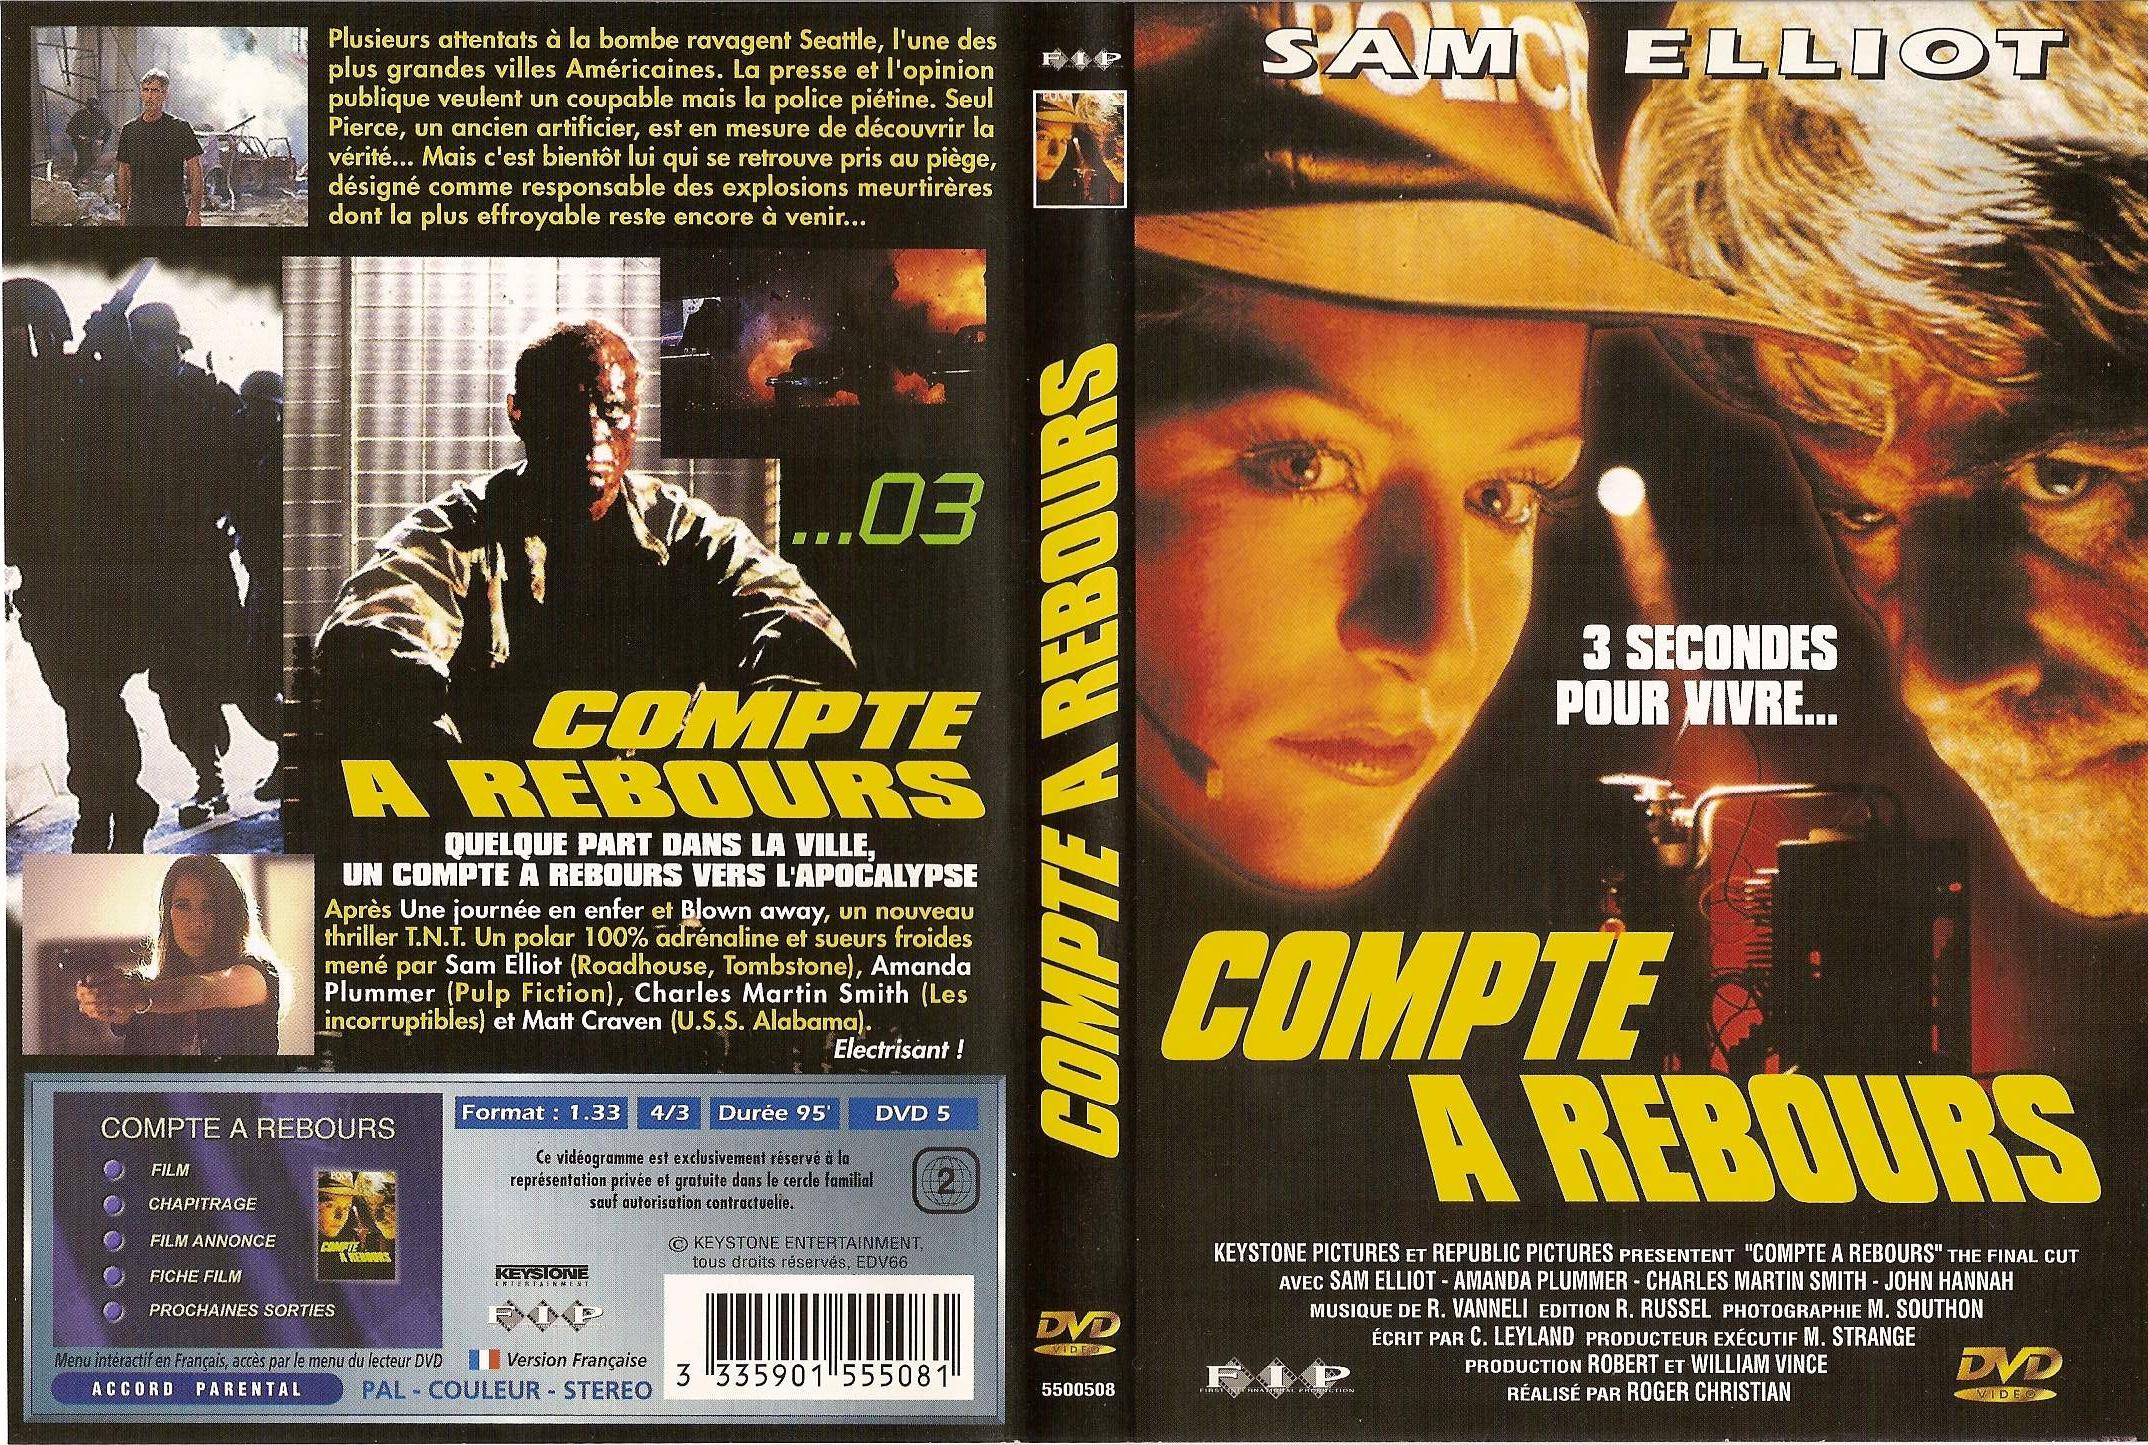 Jaquette DVD de Compte à rebours - Cinéma Passion